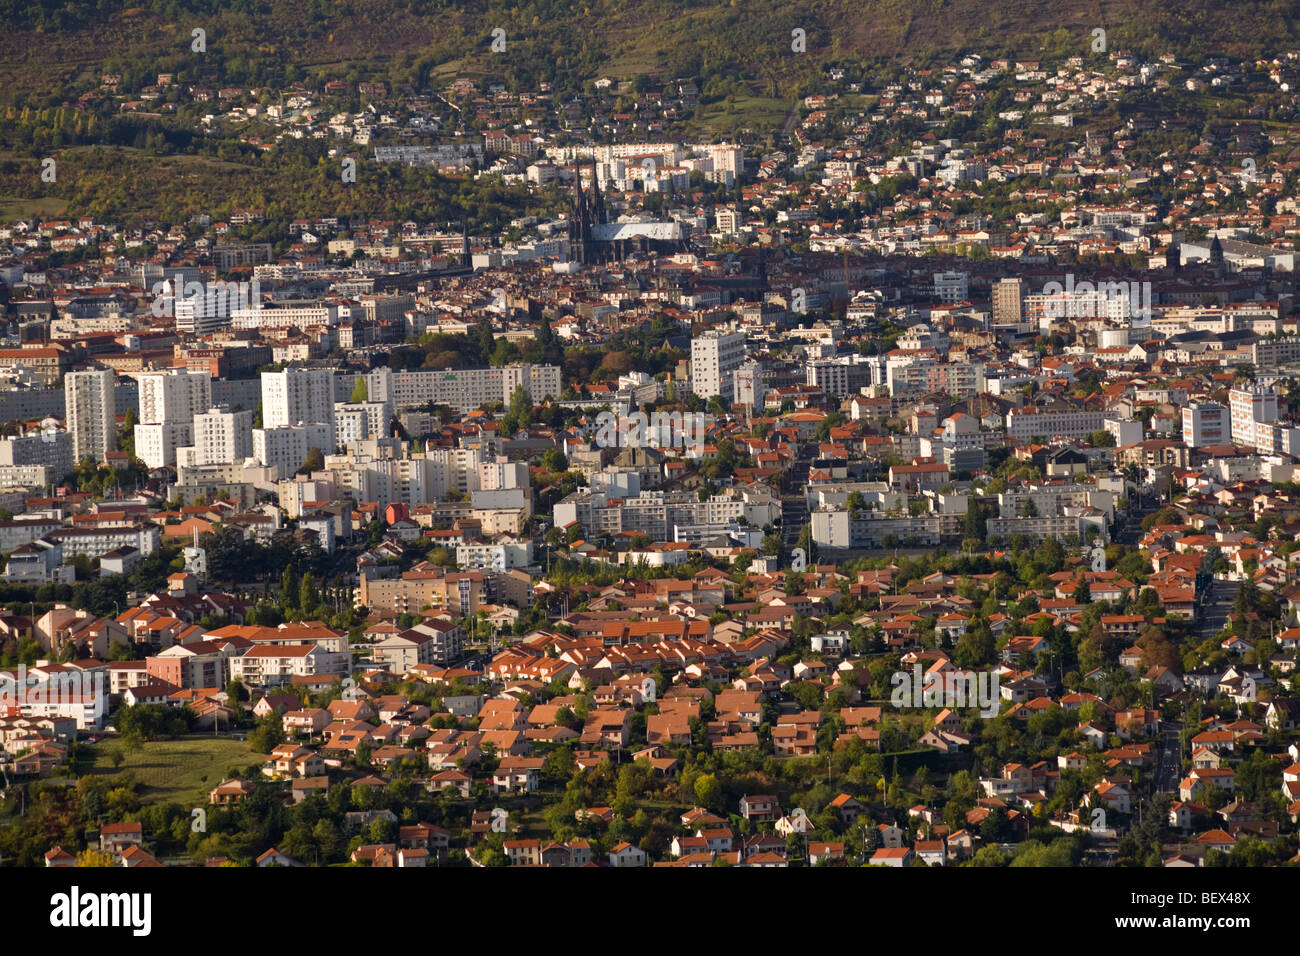 Dans le début de l'automne, une vue aérienne de Clermont-Ferrand (France). Vue aérienne de la ville de Clermont-Ferrand (France). Banque D'Images